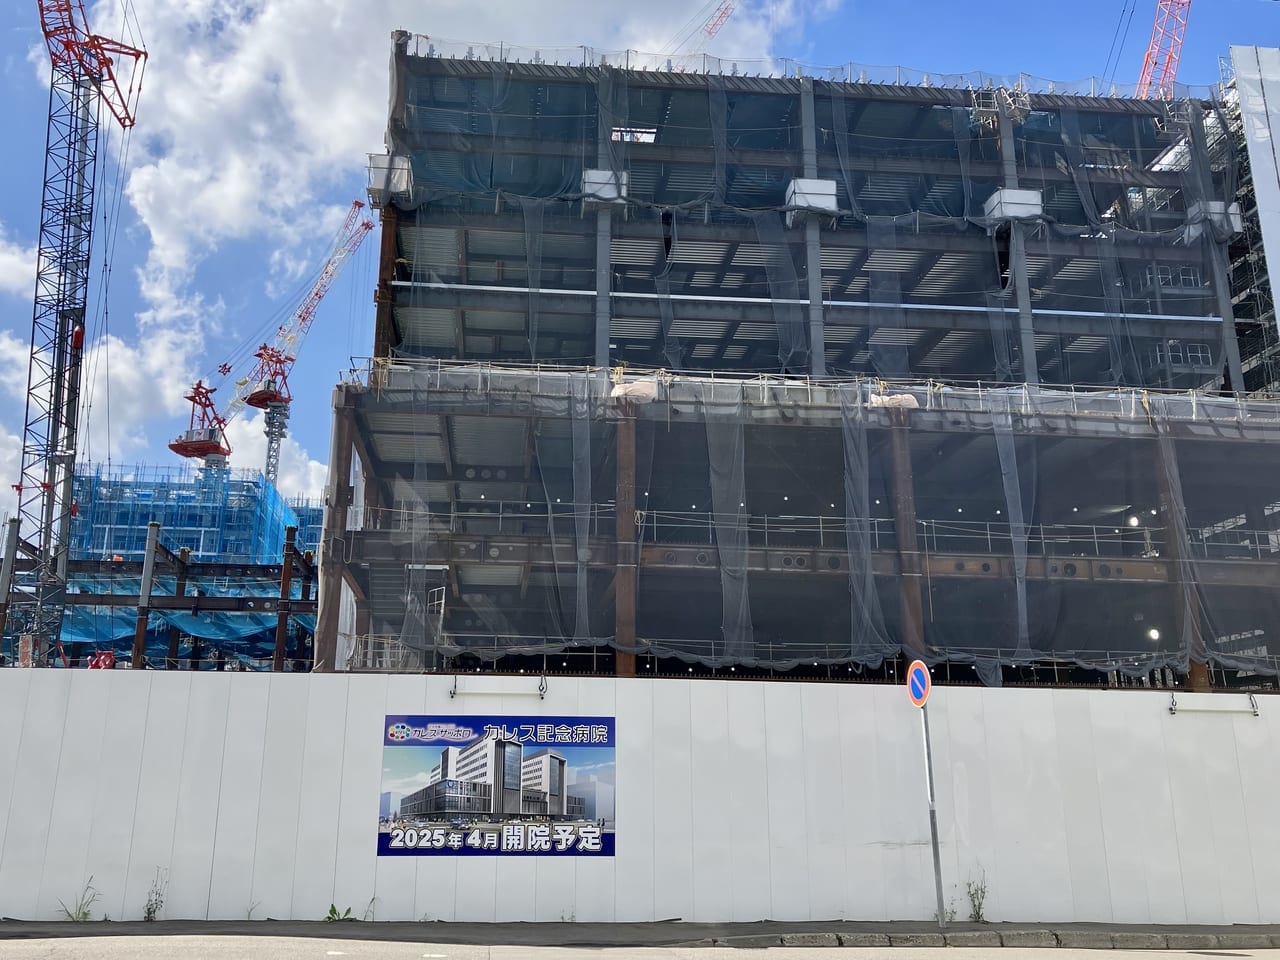 札幌駅周辺の開発がどんどん進んでいます。東区の再開発エリアに建設中の建物は病院でした。